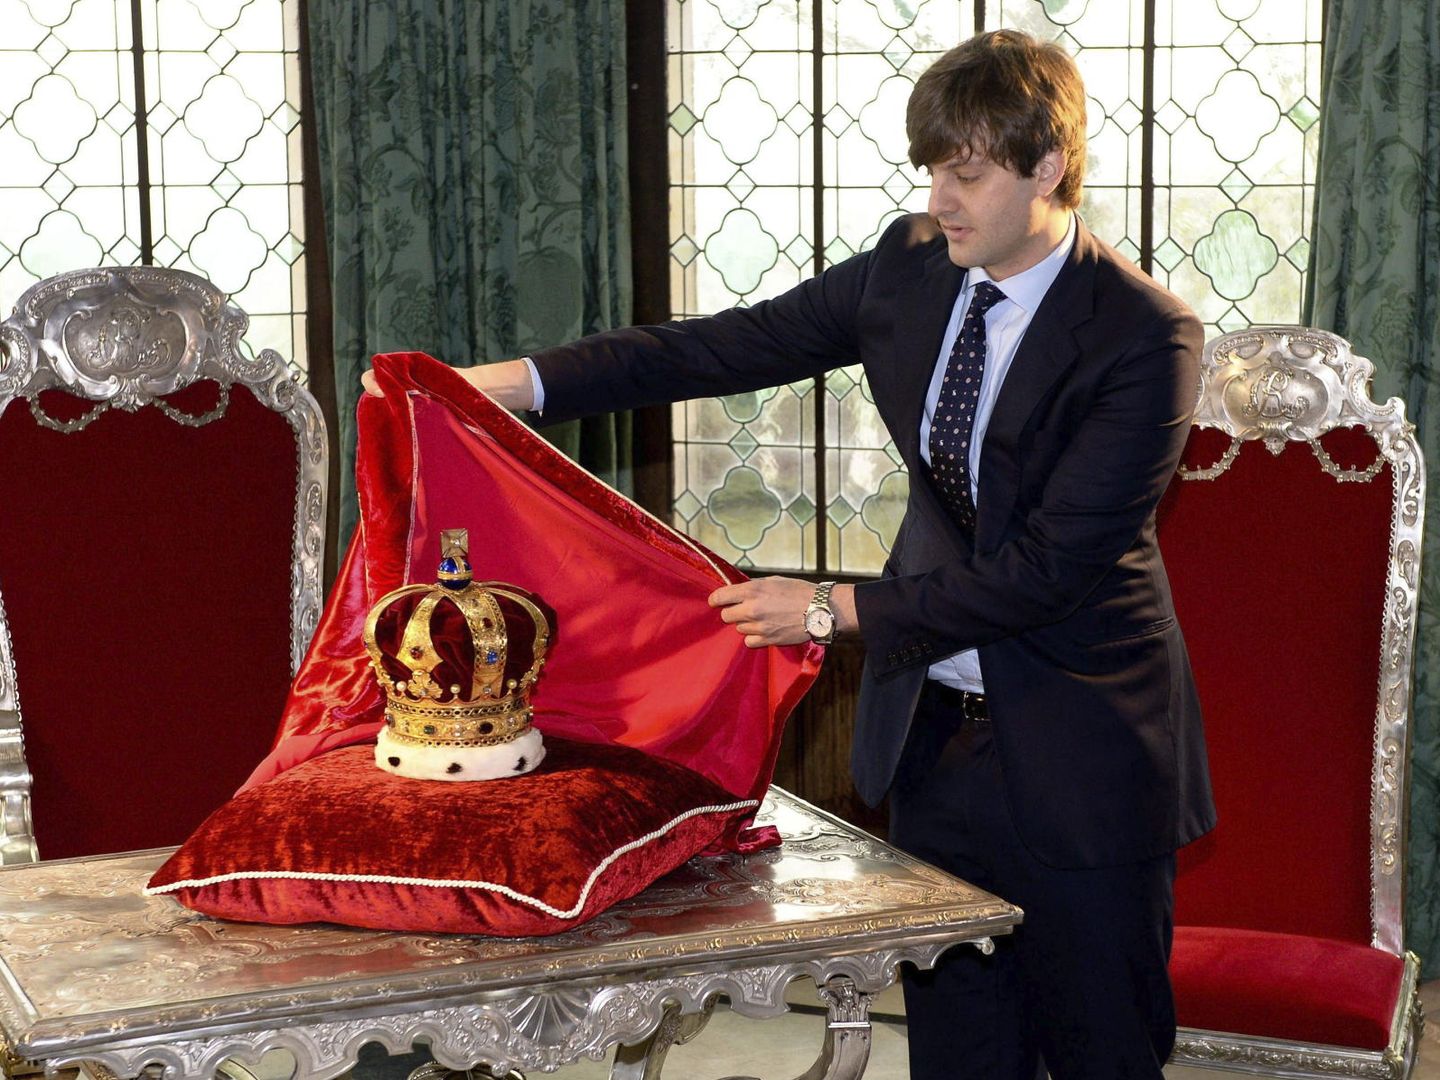 El príncipe heredero de Hannover, Ernesto Augusto, descubre la corona de Hannover en el castillo de Marienburg. (EFE)